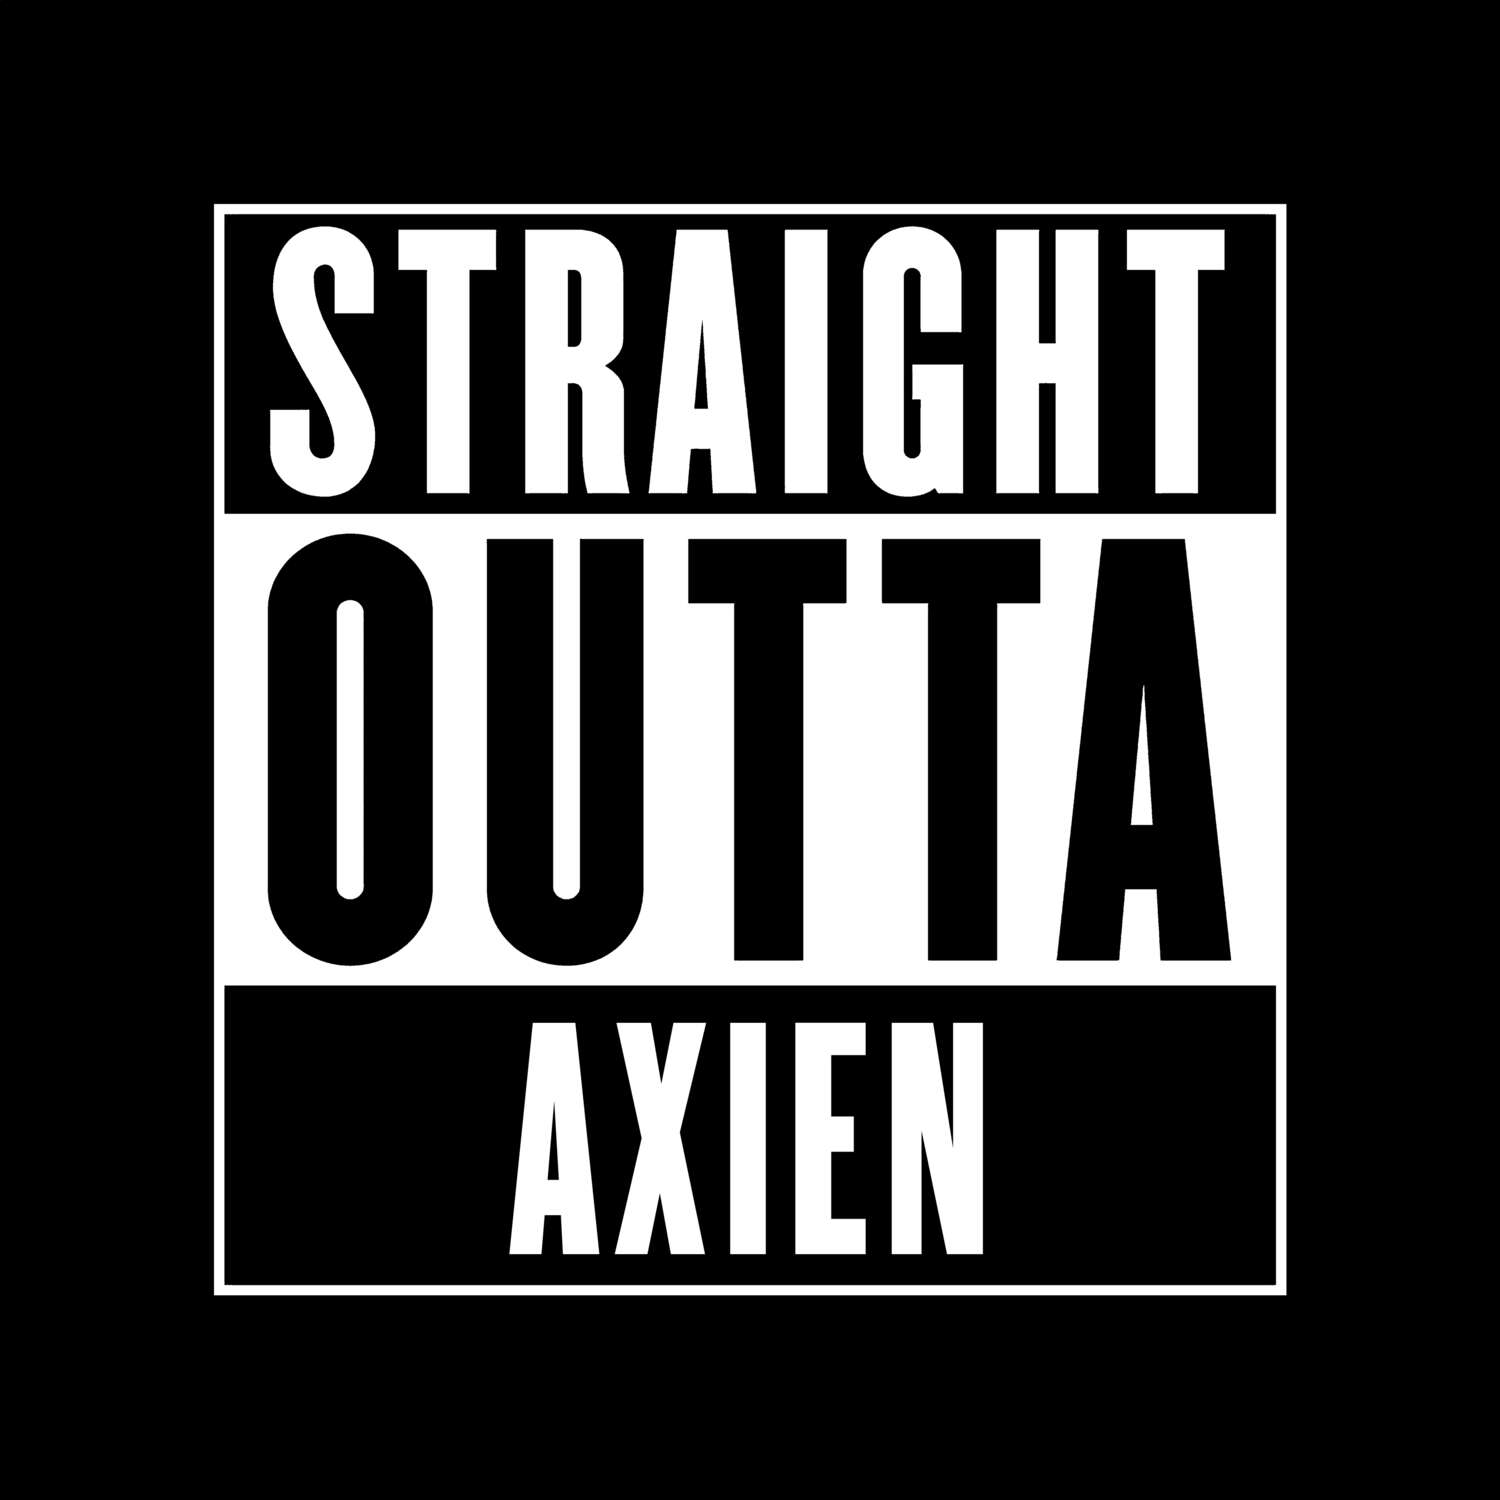 Axien T-Shirt »Straight Outta«